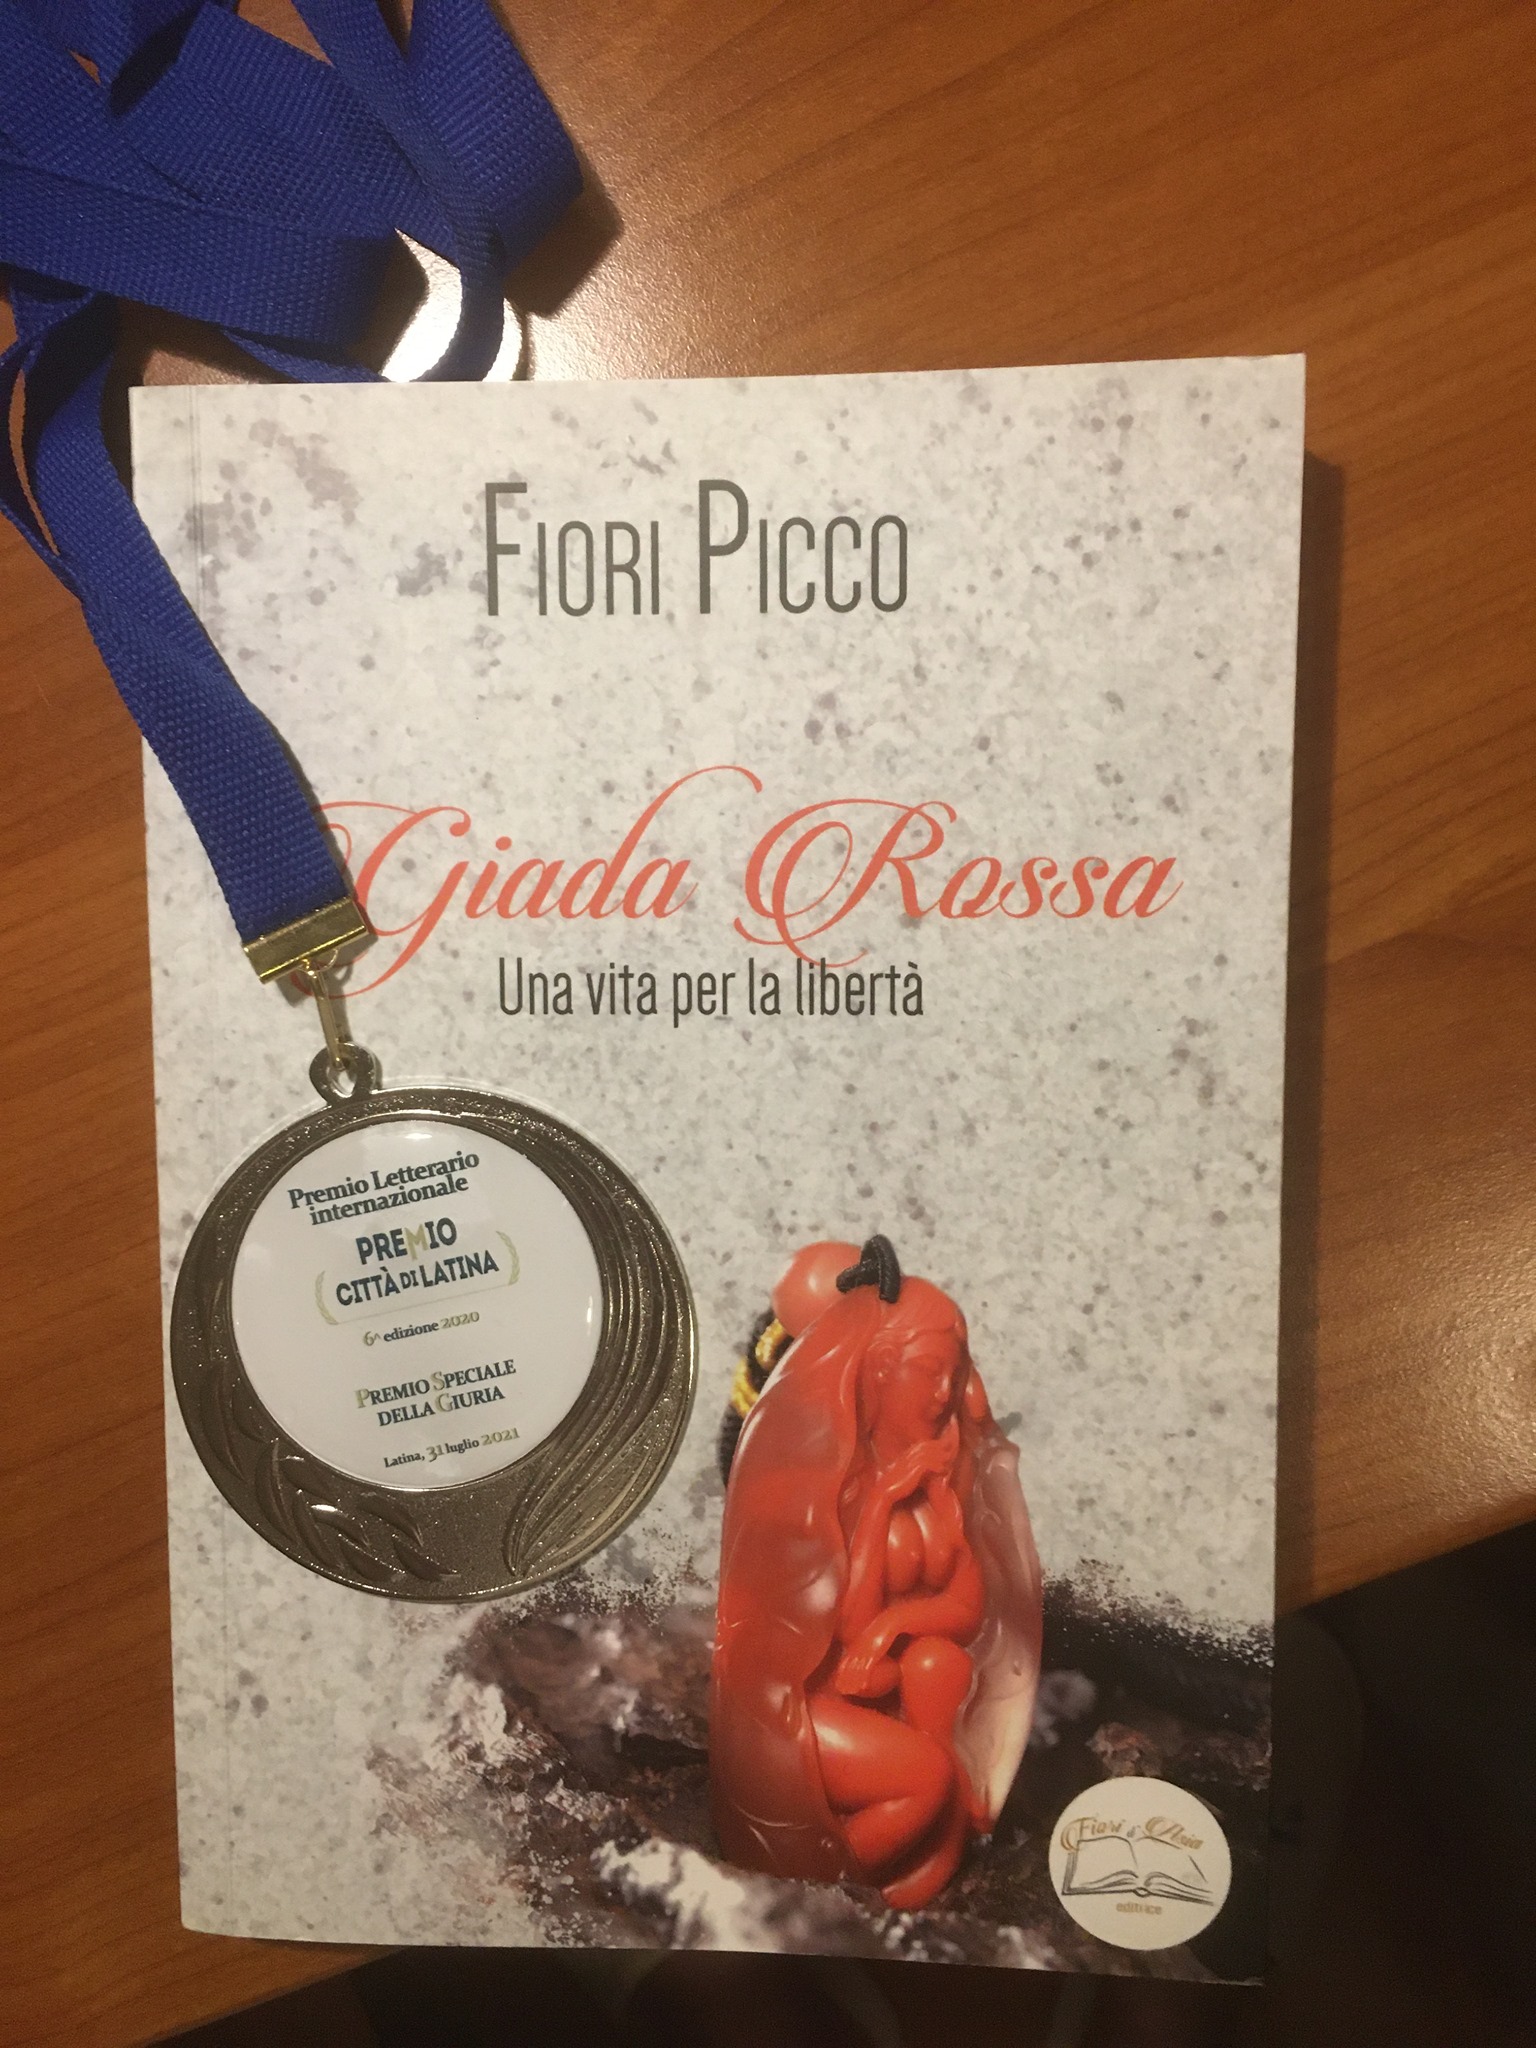 Premio Speciale  della Giuria per "Giada Rossa- Una vita per la libertà" di Fiori Picco